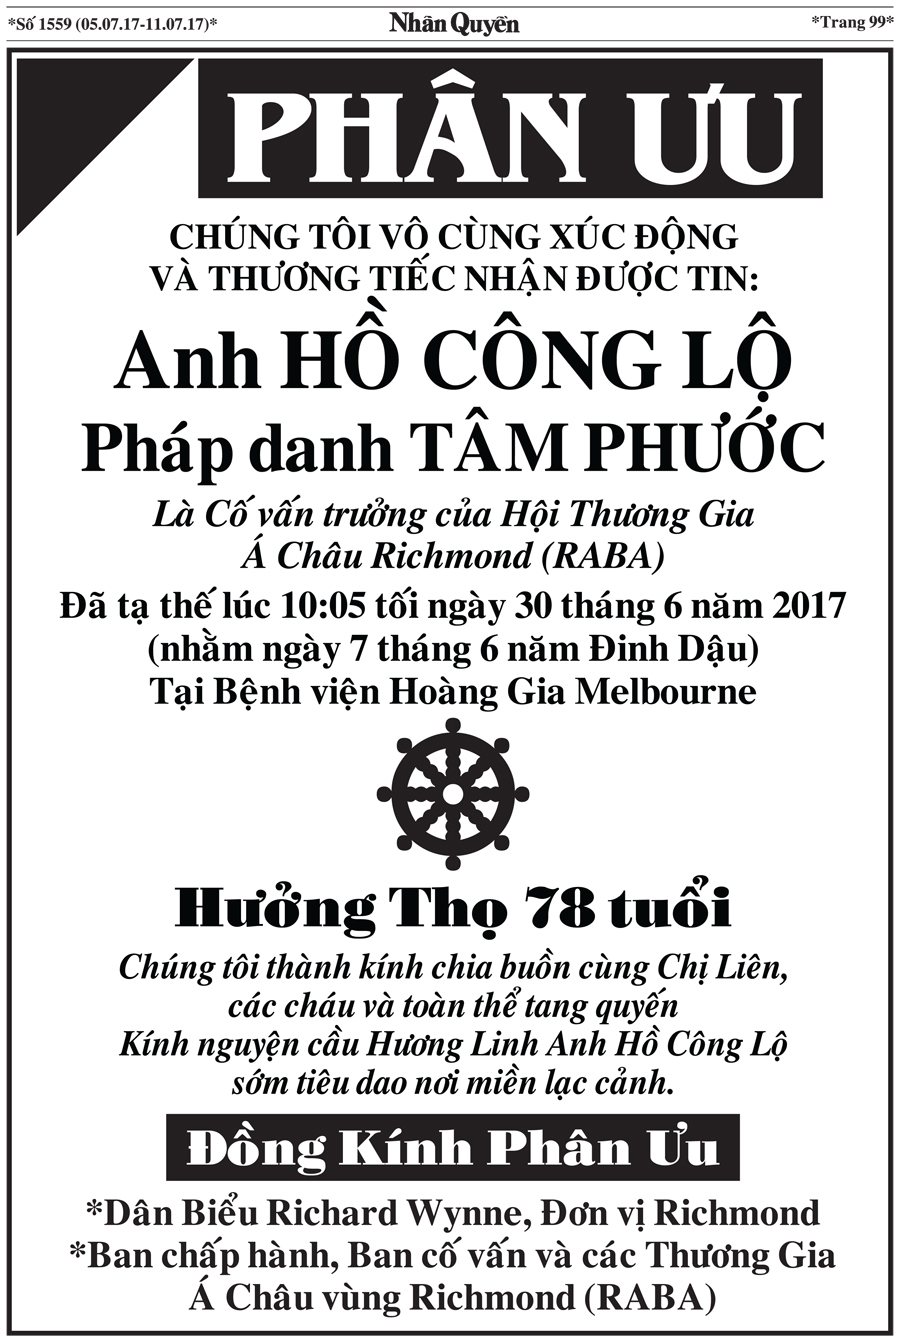 Bao Nhan Quyen SoDac Biet ve Chu But Ho Cong Lo (12)